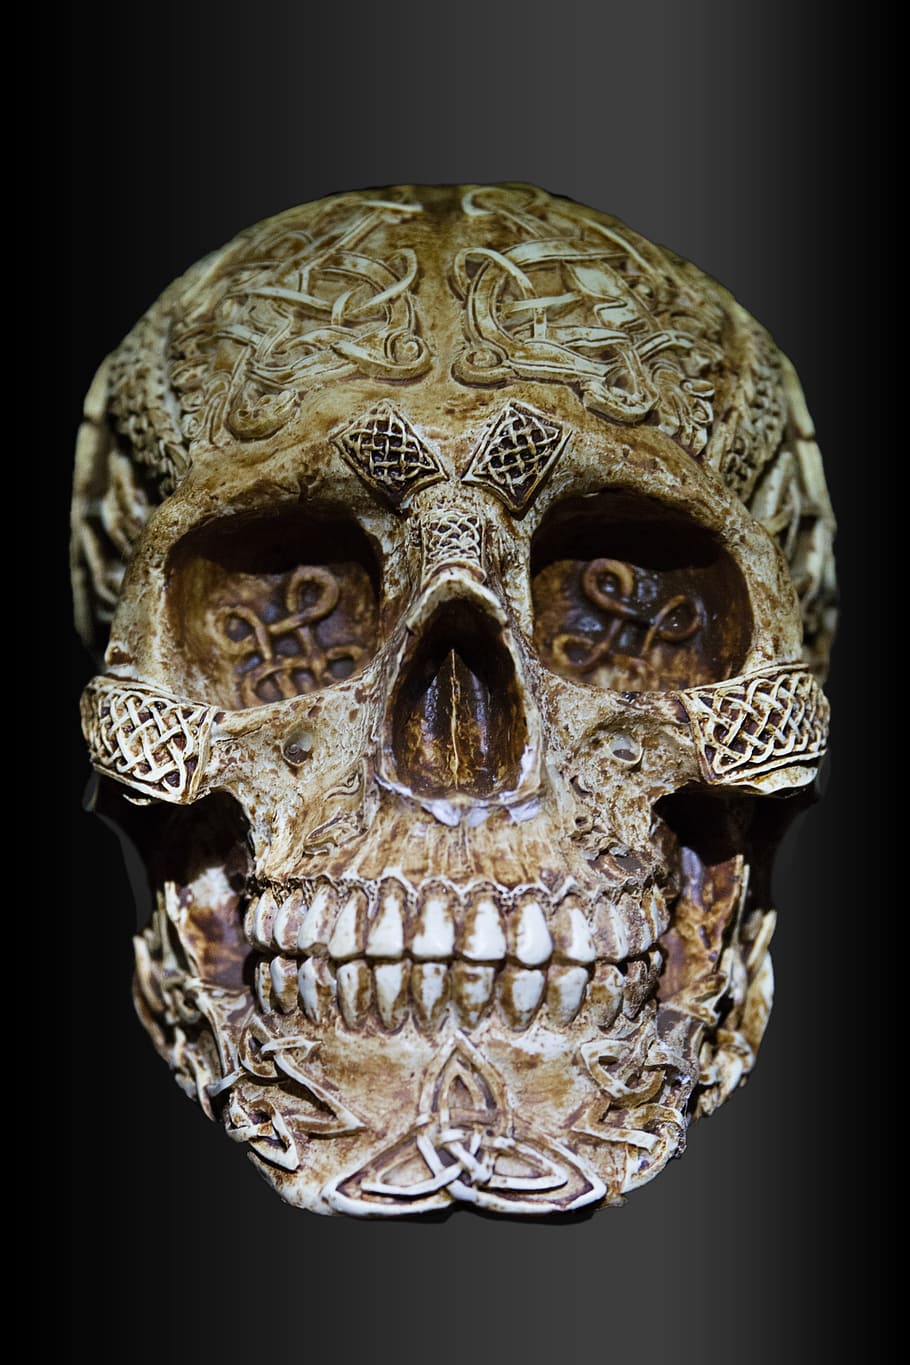 beige, engrave, skull decor, skull and crossbones, celts, celtic skull, black background, studio shot, art and craft, close-up